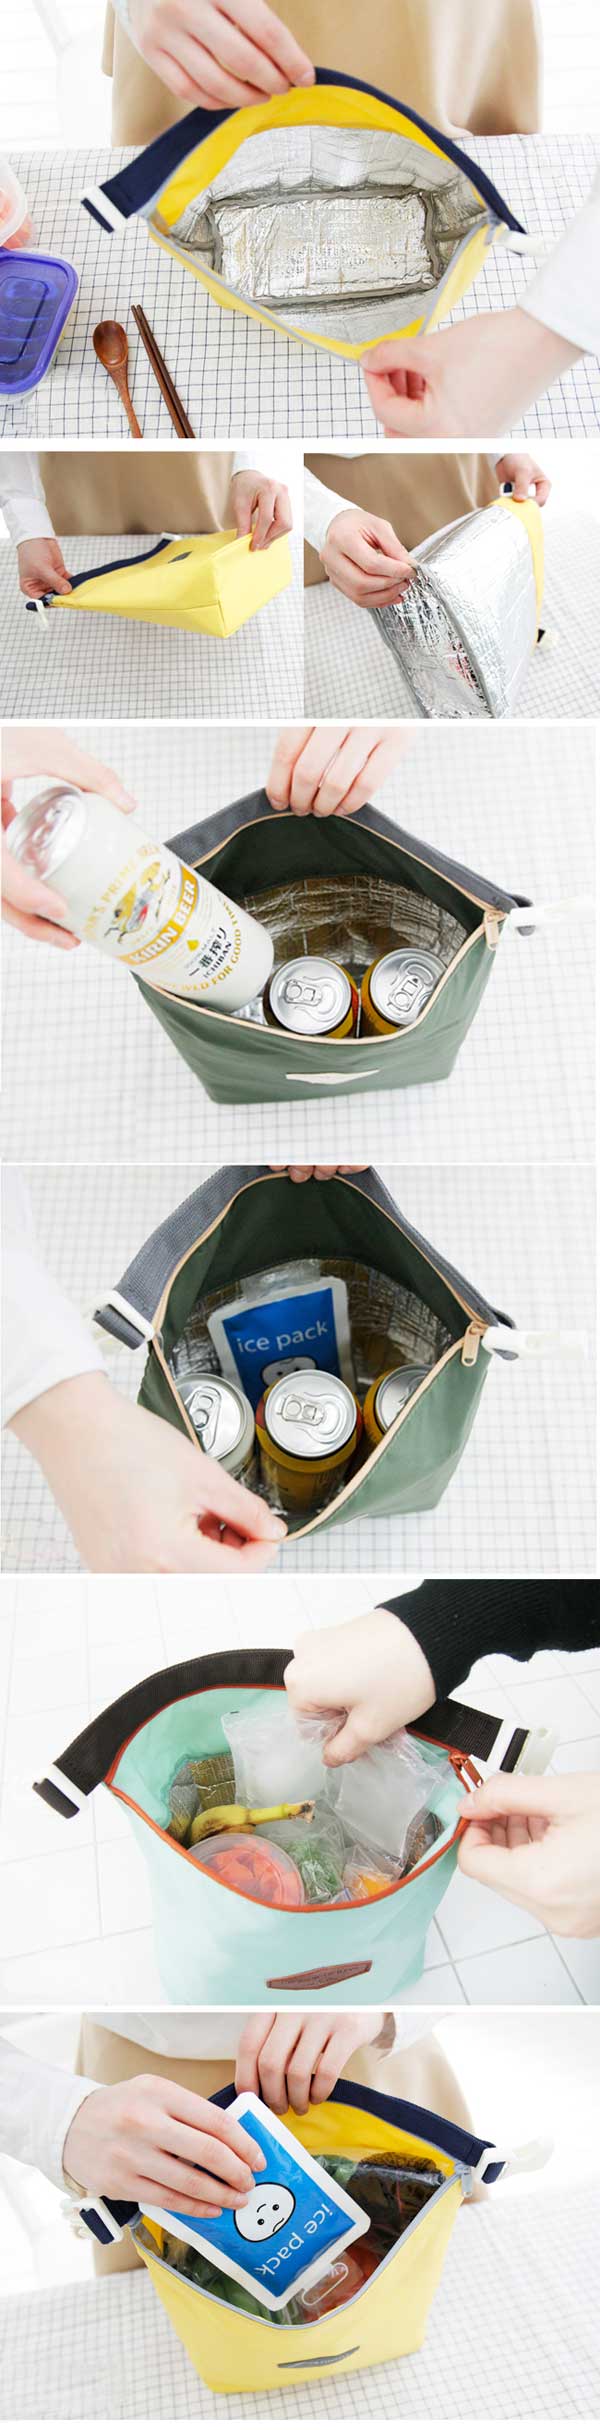 Túi đựng cơm Iconic Lunch Pouch Hàn Quốc